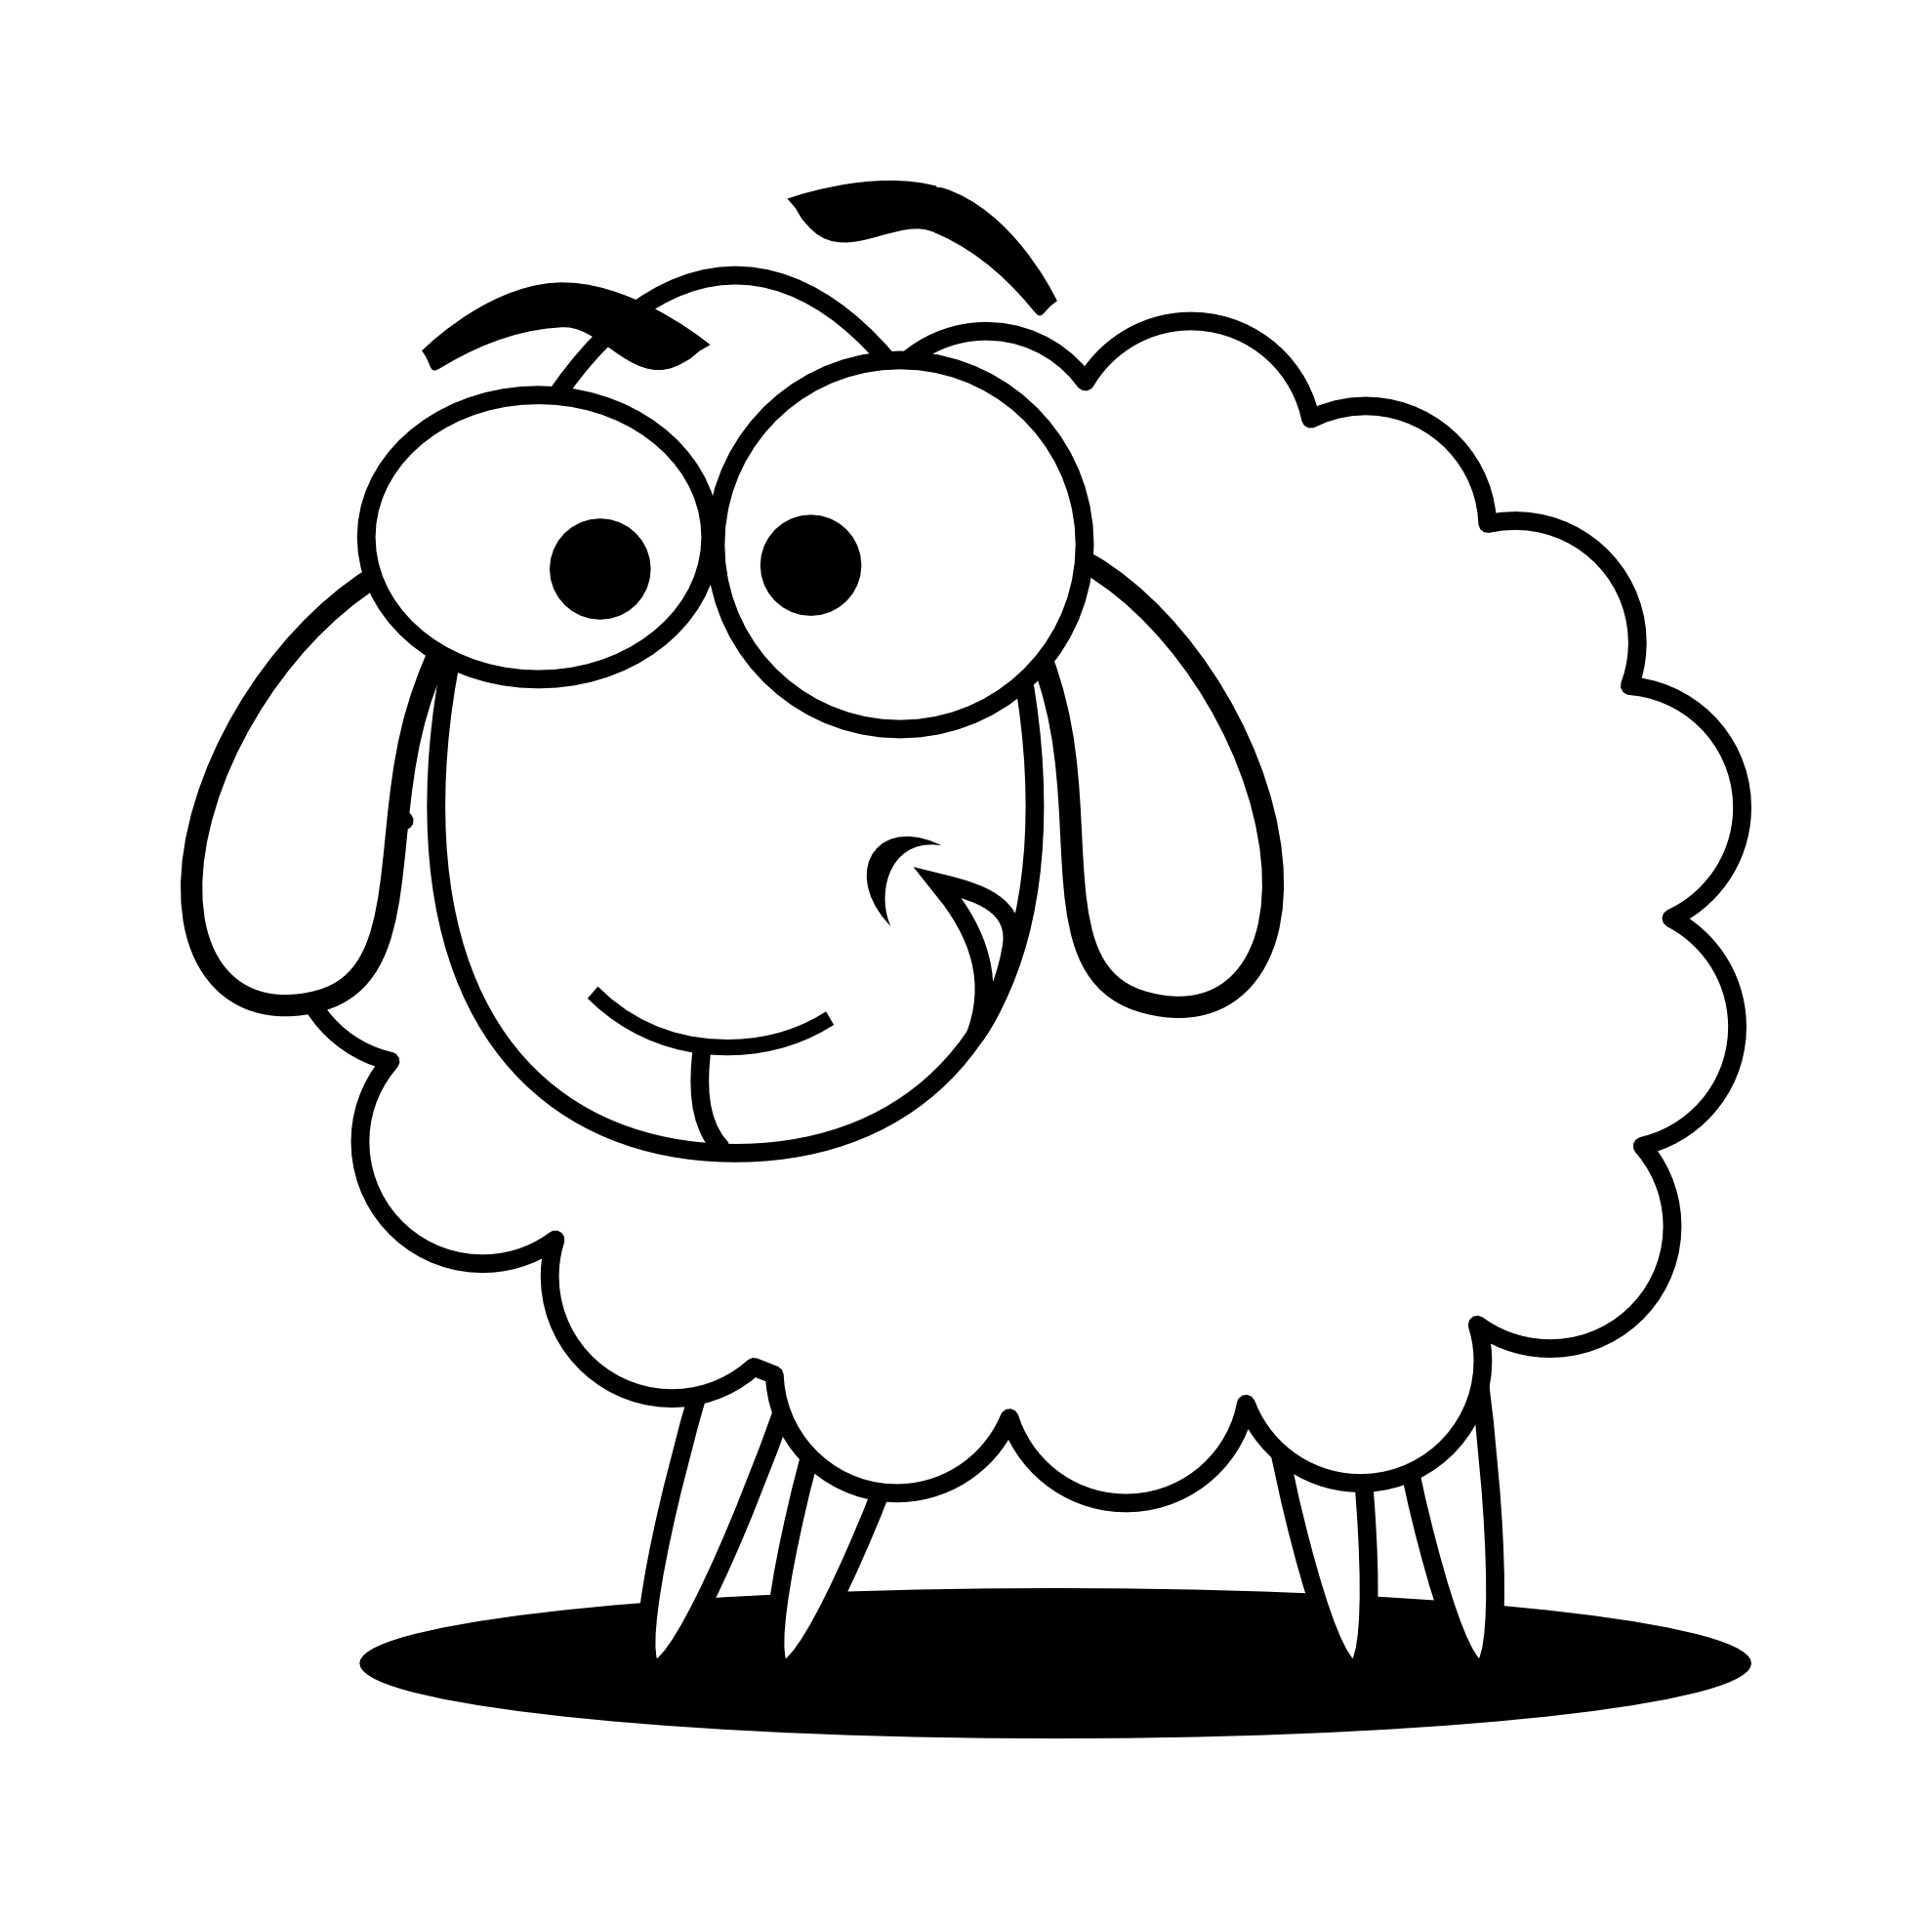 Sheep lamb clip art free clipart images 2 clipartix